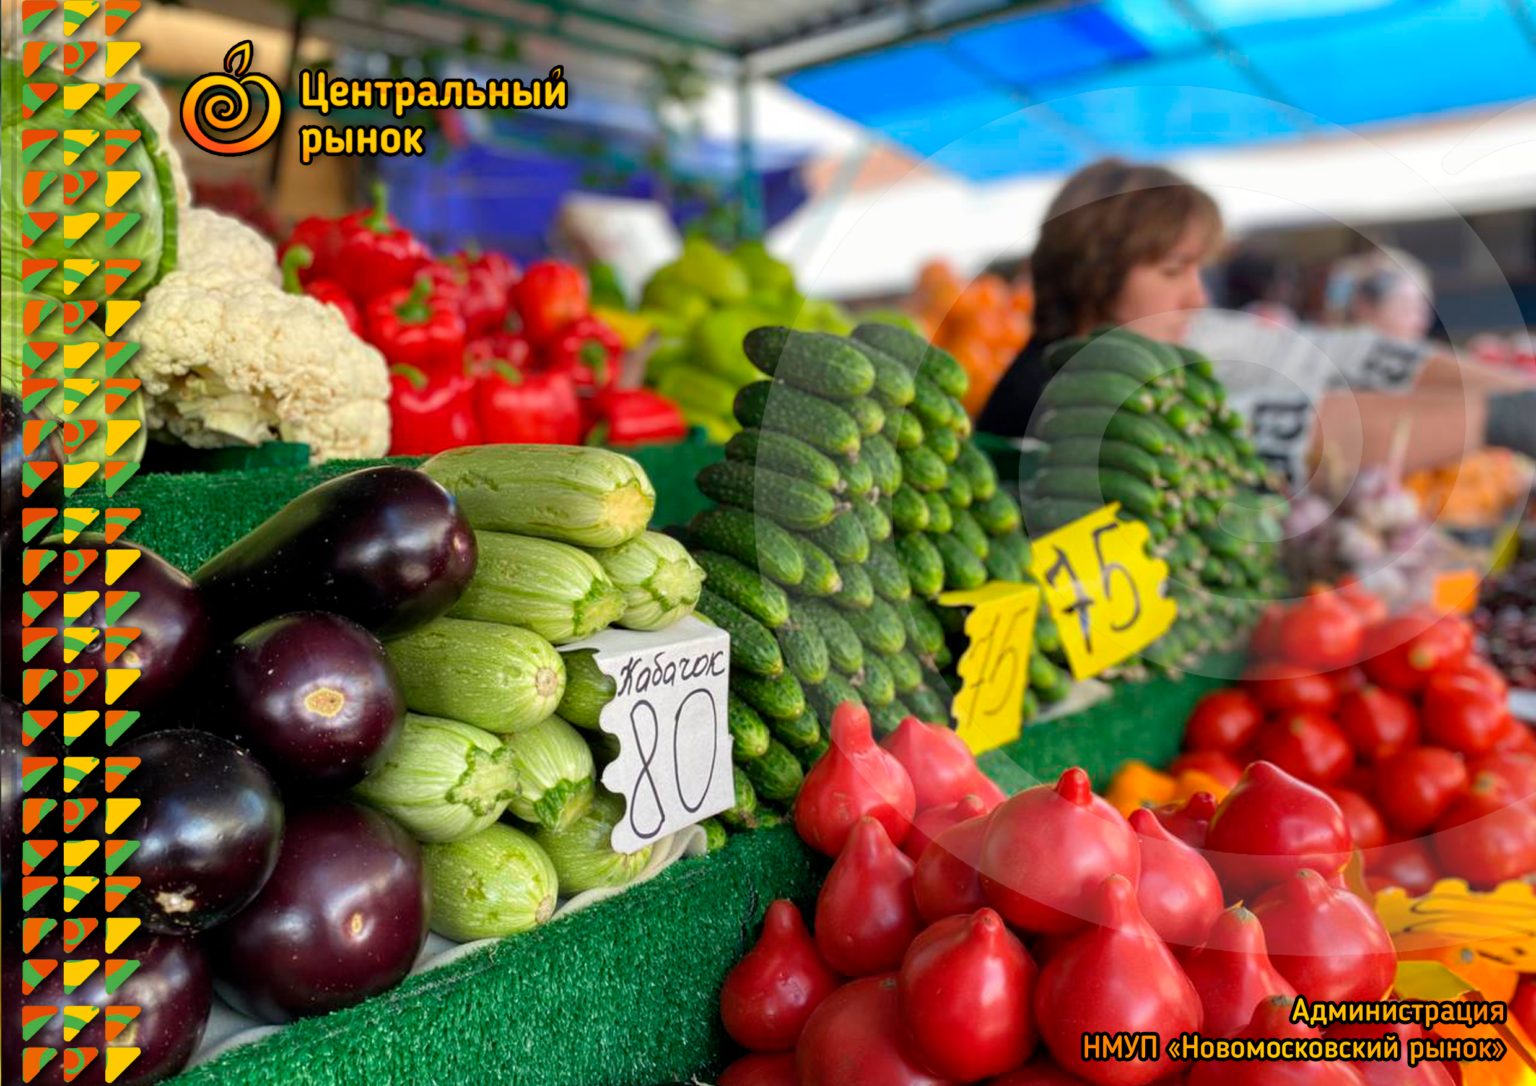 Фруктовый центр. Фруктовый рынок. Центральный рынок. Турецкий рынок овощей и фруктов. Крытый рынок фрукты и овощи.